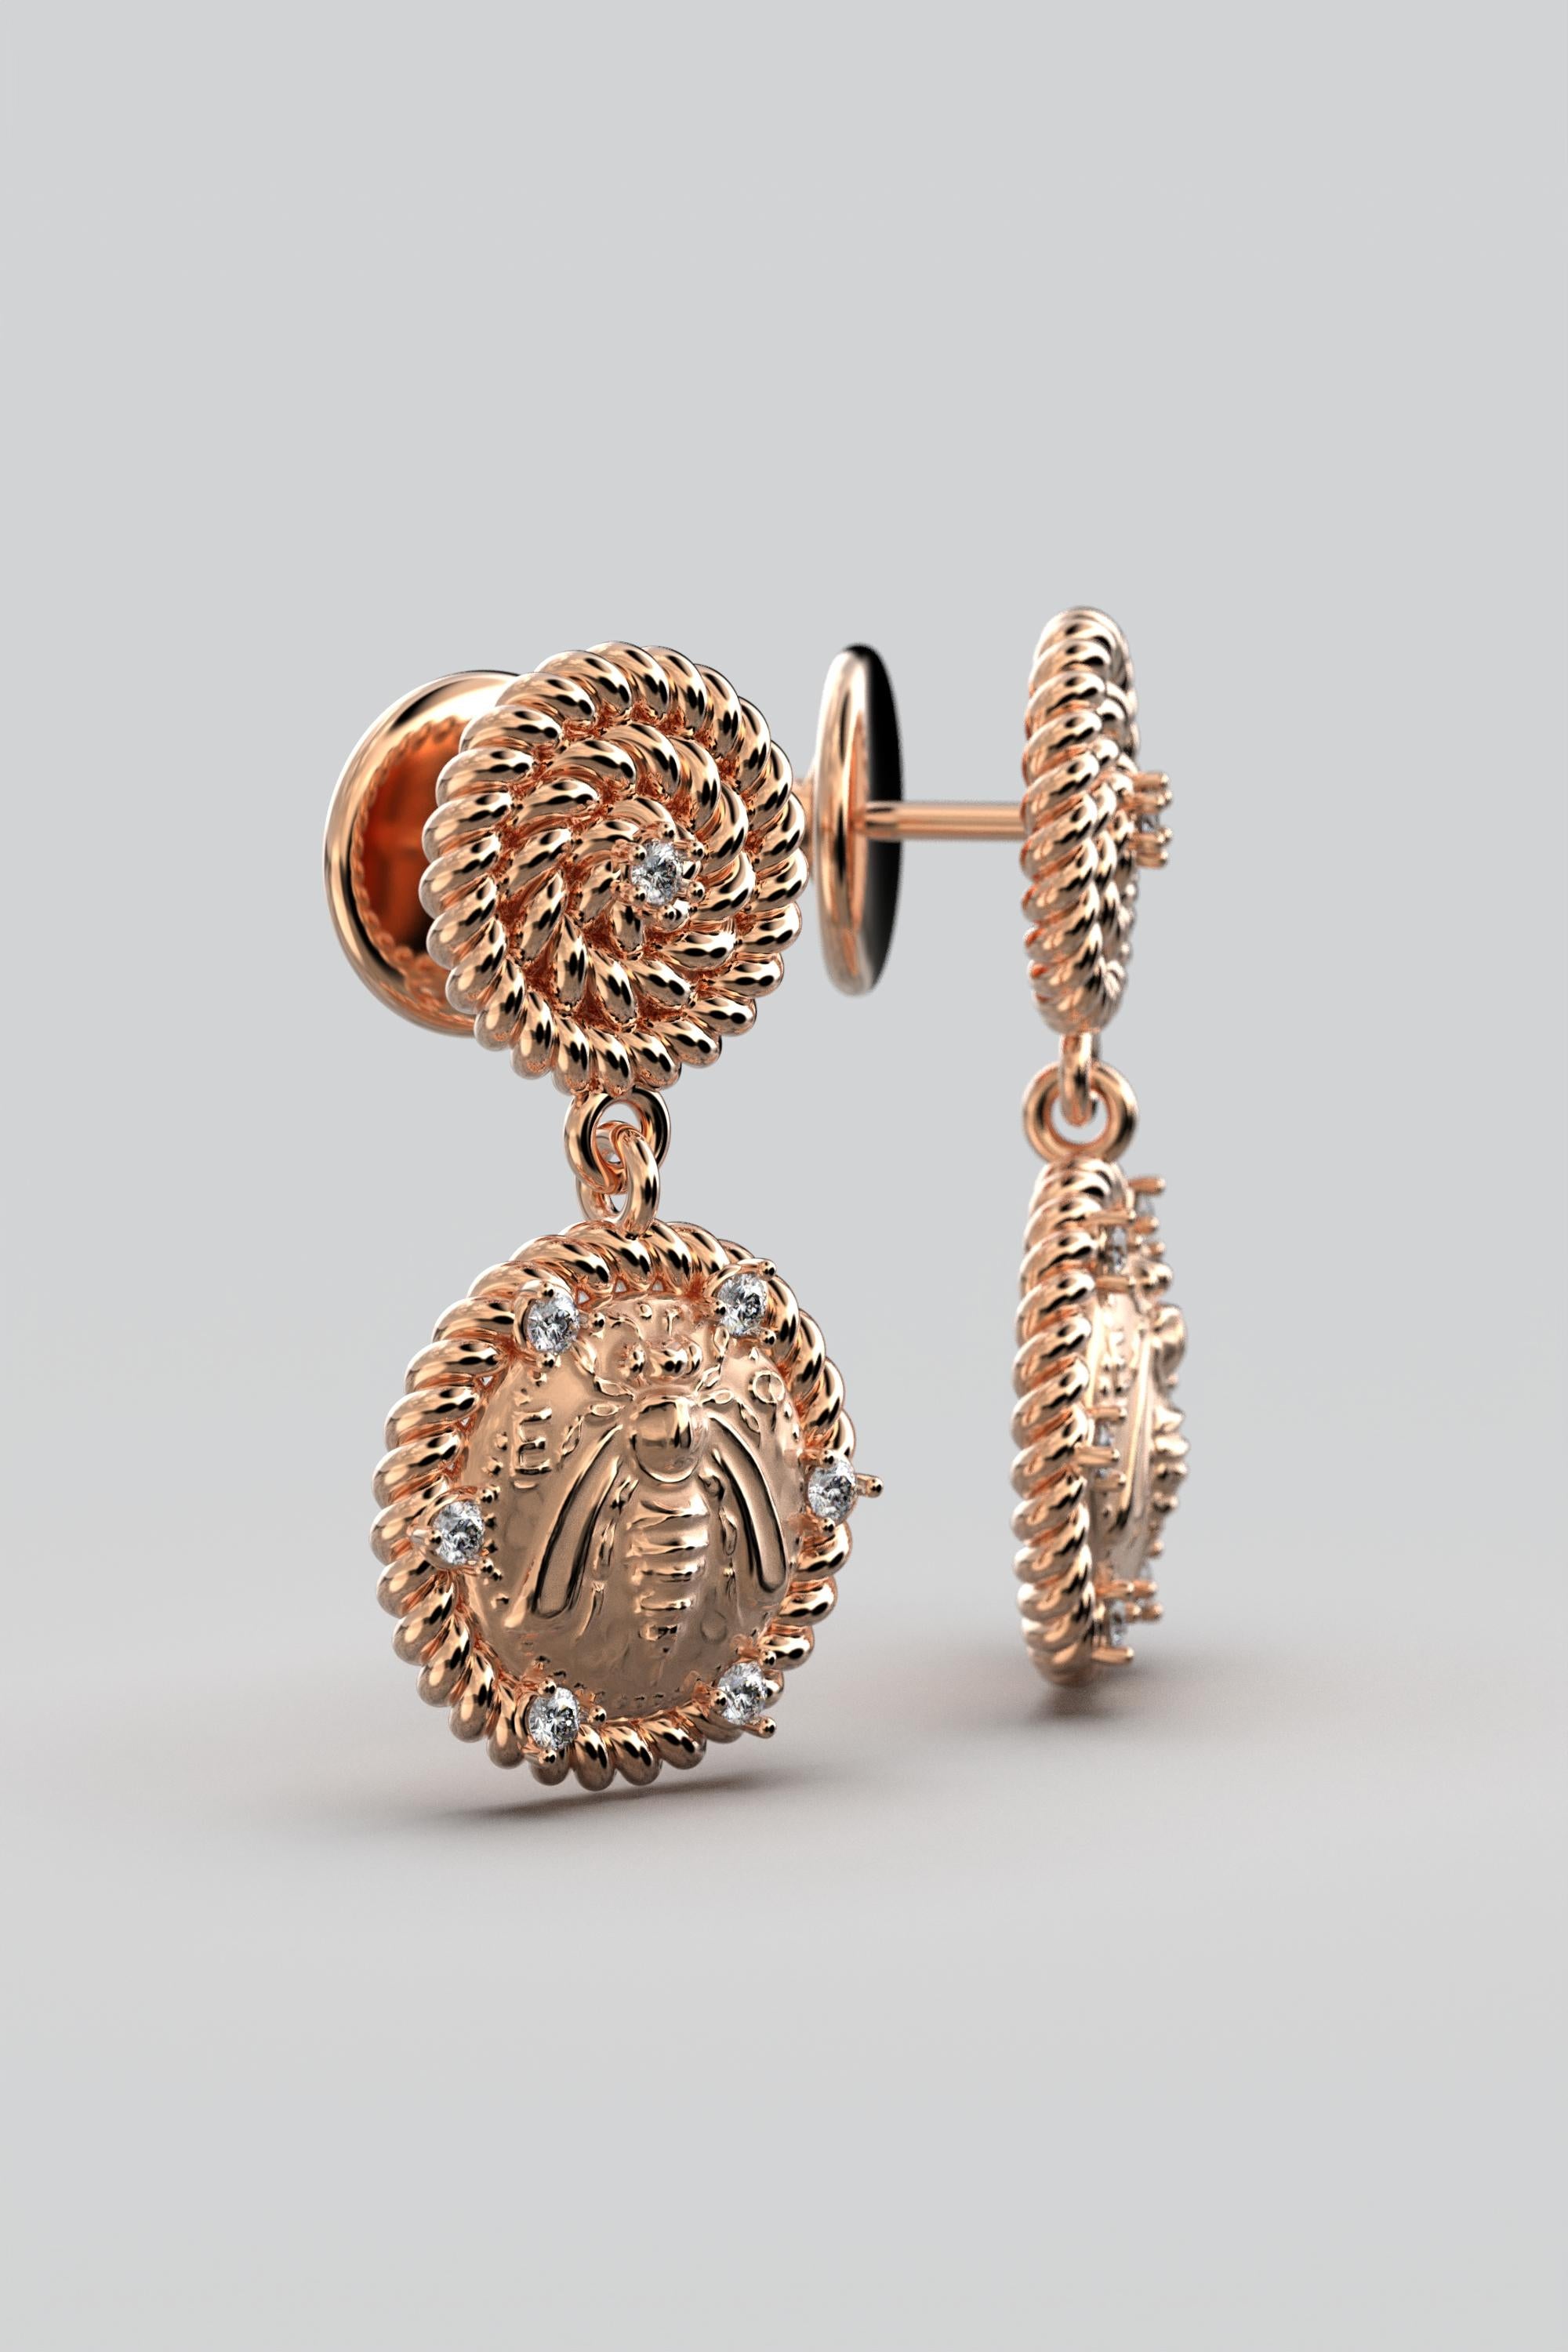 Italian Jewelry | 18k Gold Dangle Earrings With Diamonds | Bee Earrings  For Sale 2